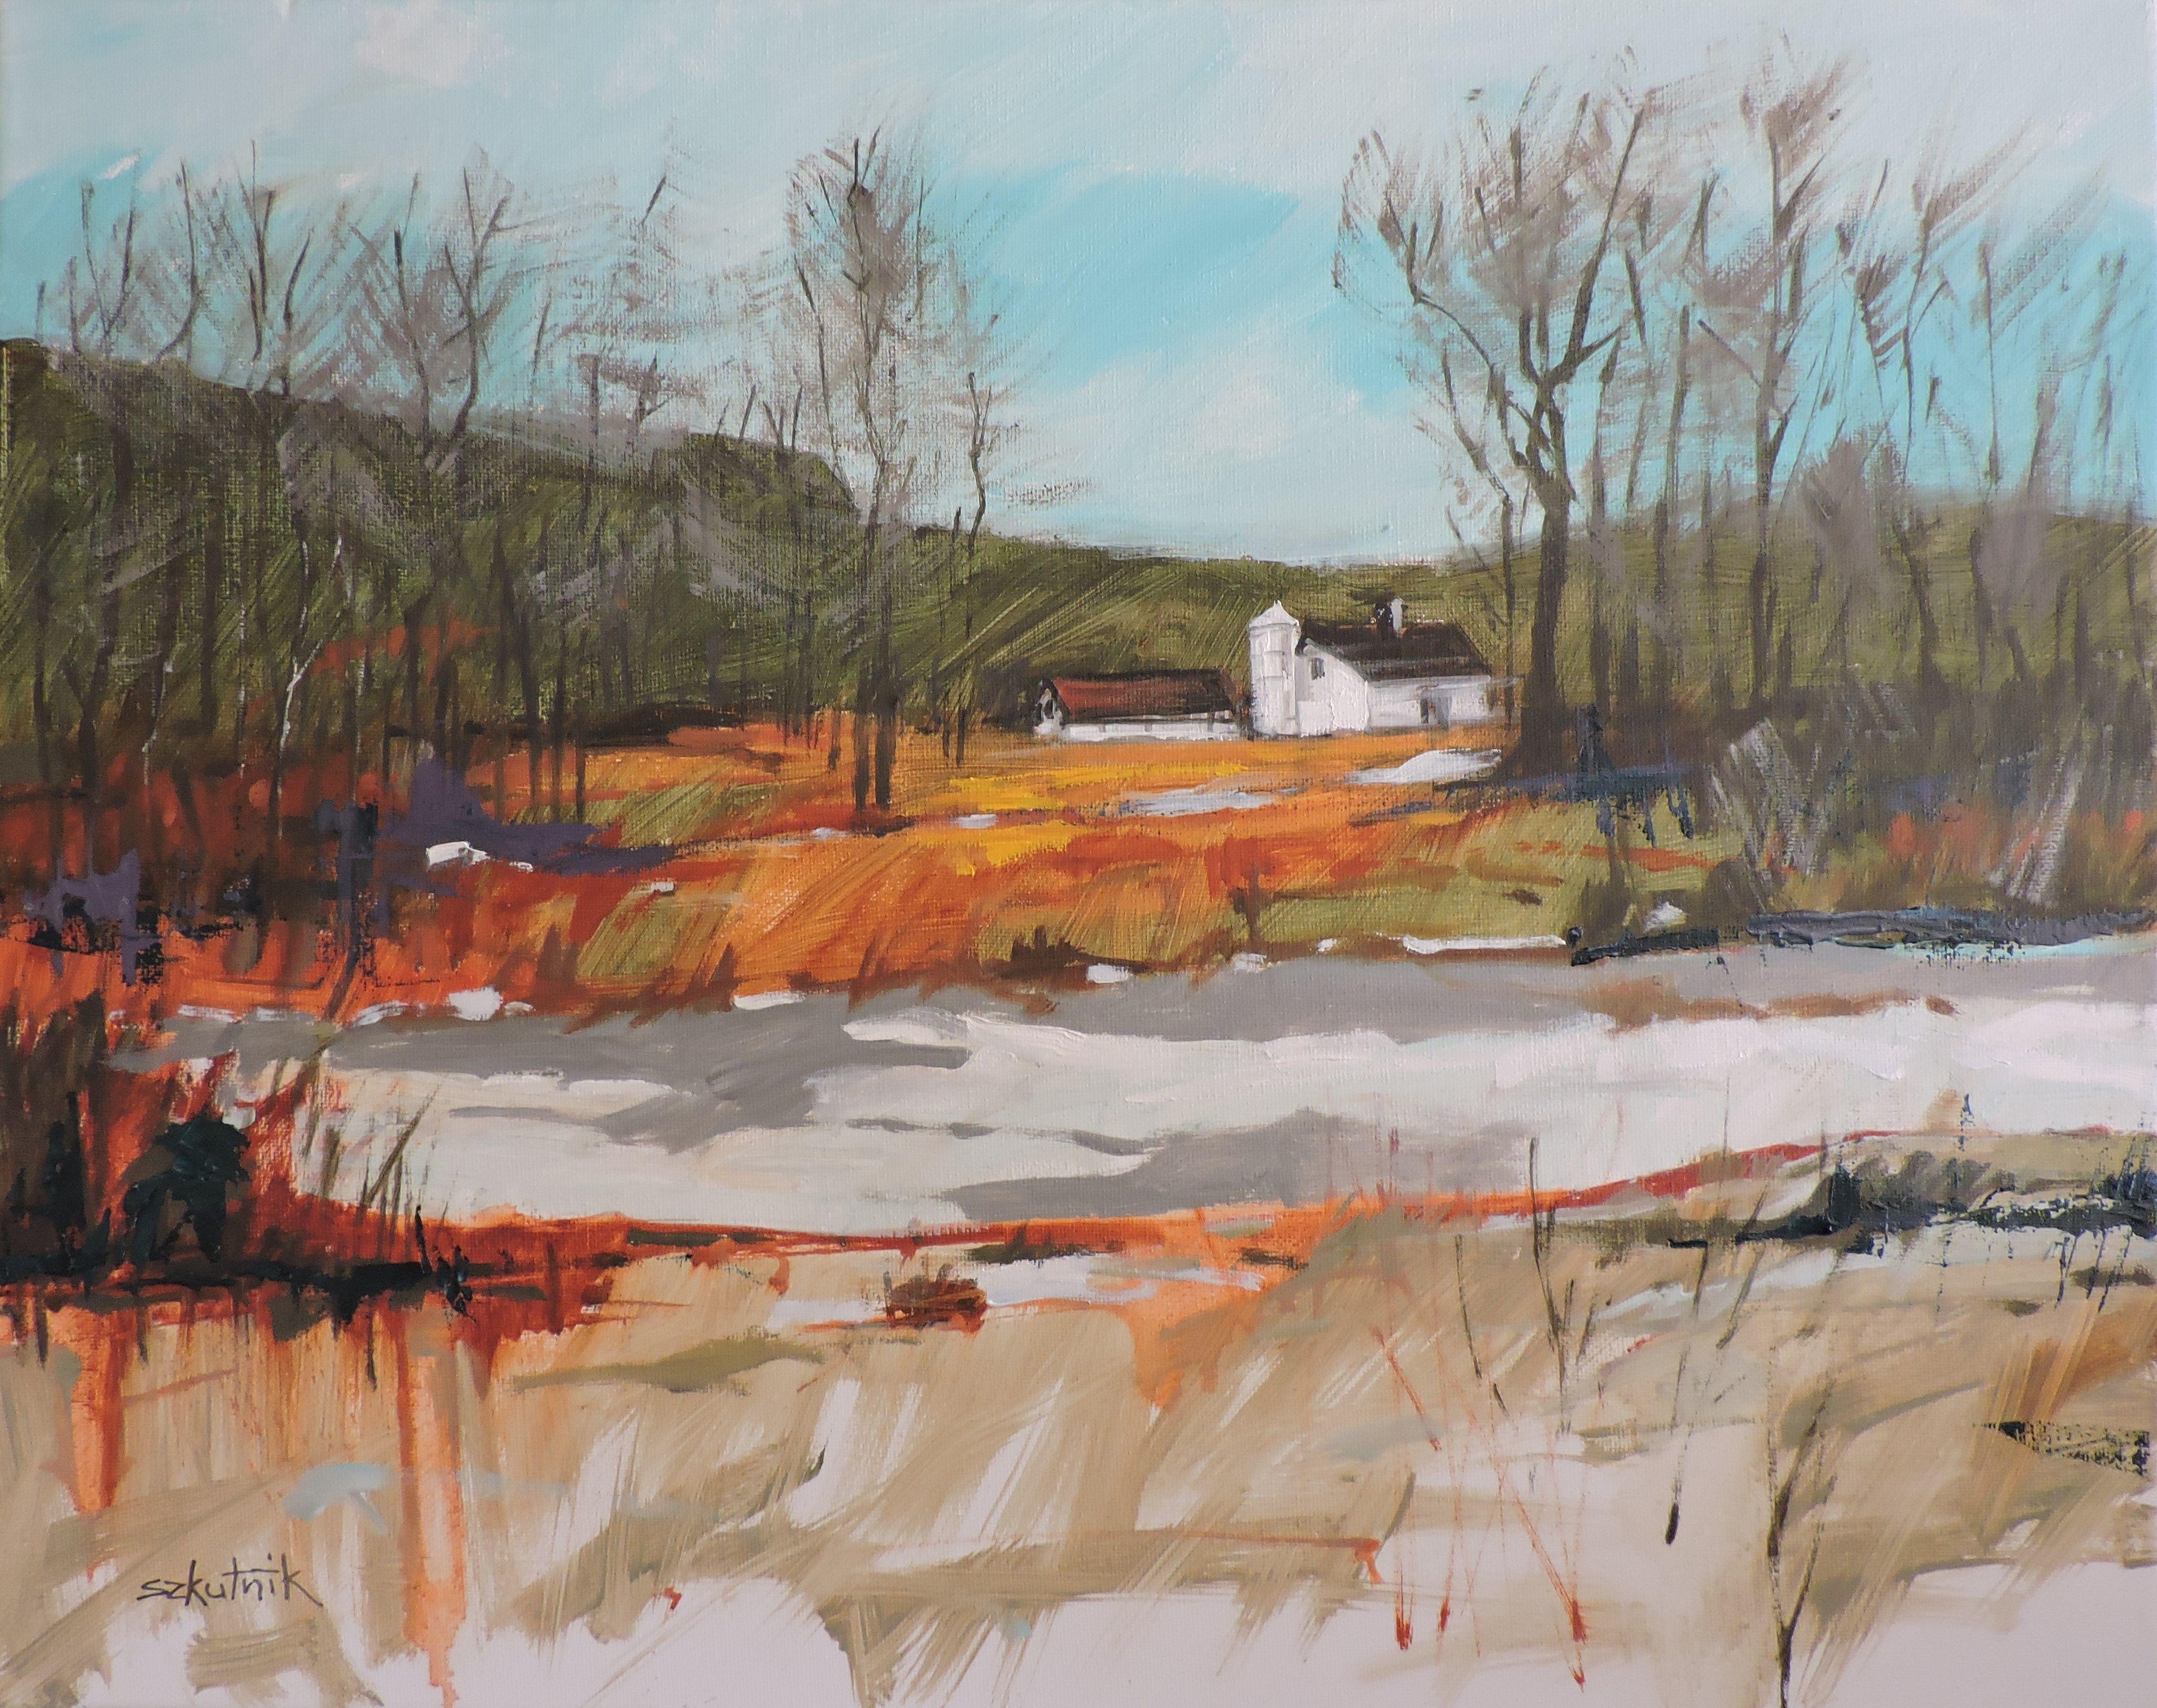 Richard Szkutnik Landscape Painting - Frozen Pond, Painting, Oil on Canvas